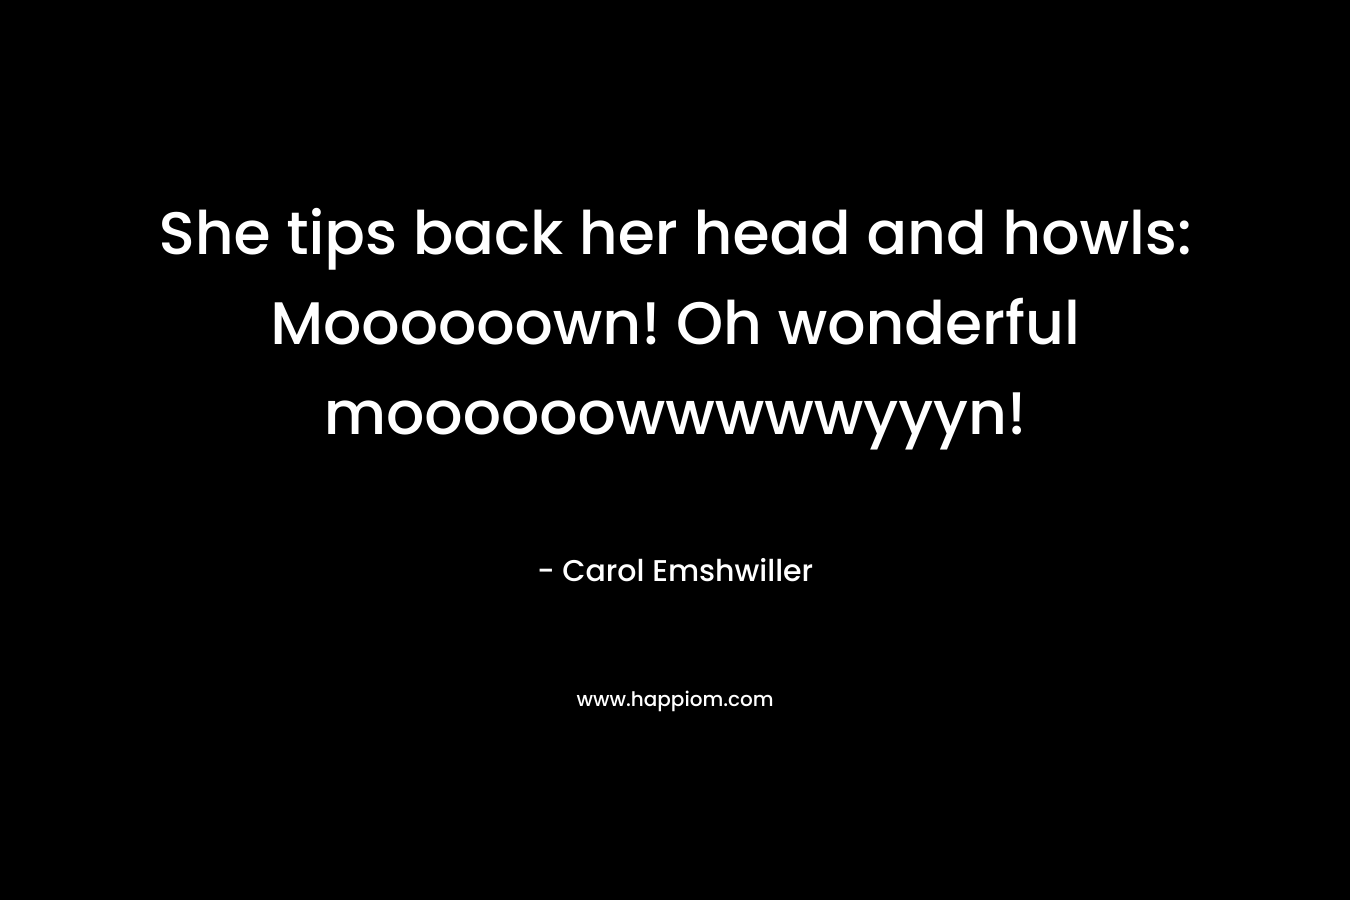 She tips back her head and howls: Moooooown! Oh wonderful moooooowwwwwyyyn!